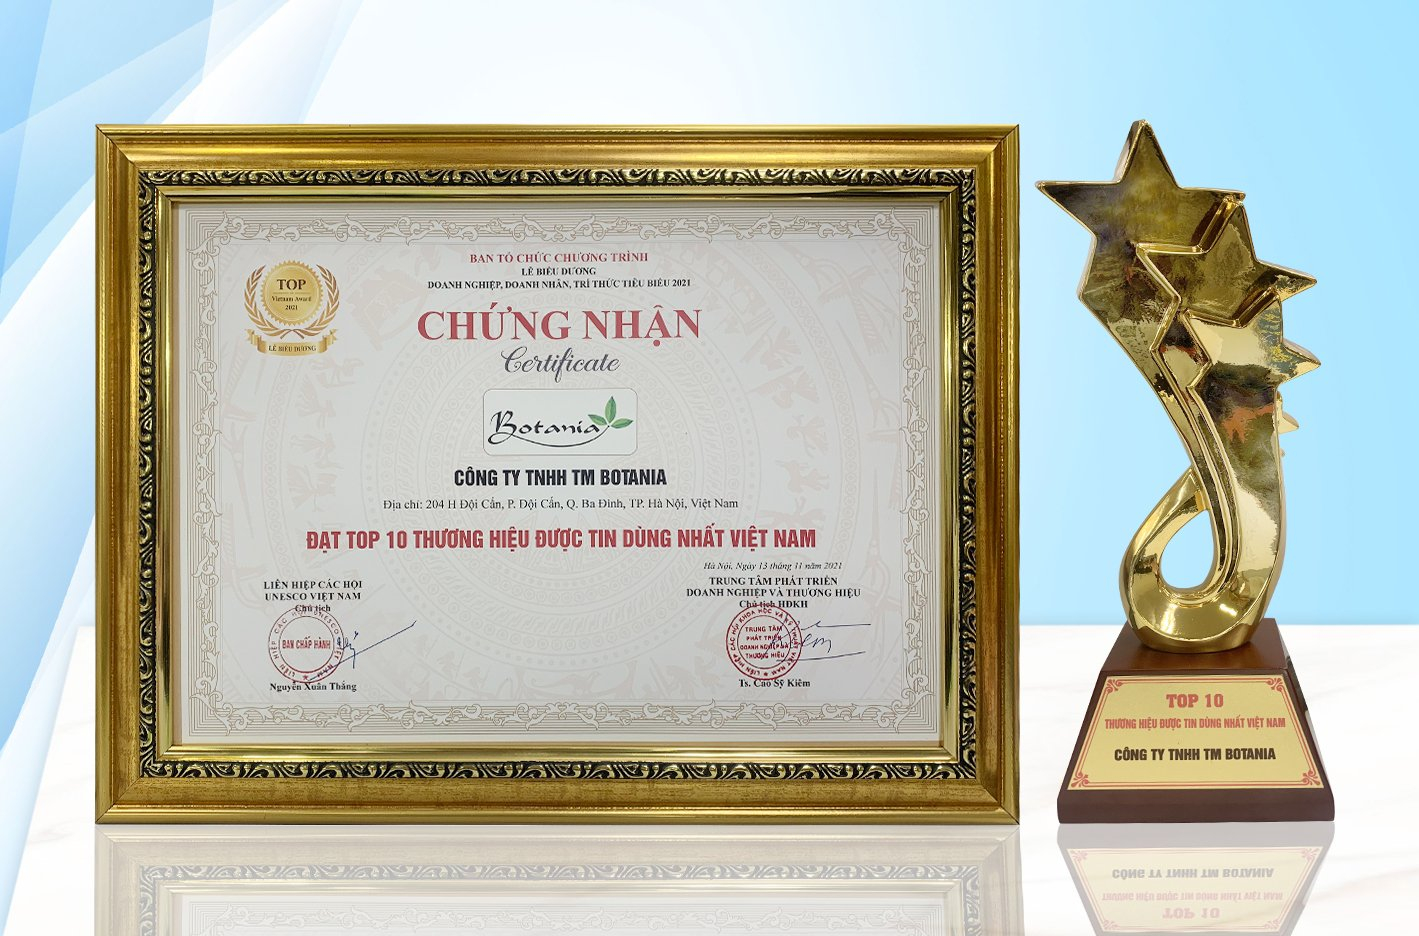  Công ty Botania đã vinh dự nhận được giải thưởng "Top 10 Thương hiệu được tin dùng nhất Việt Nam"